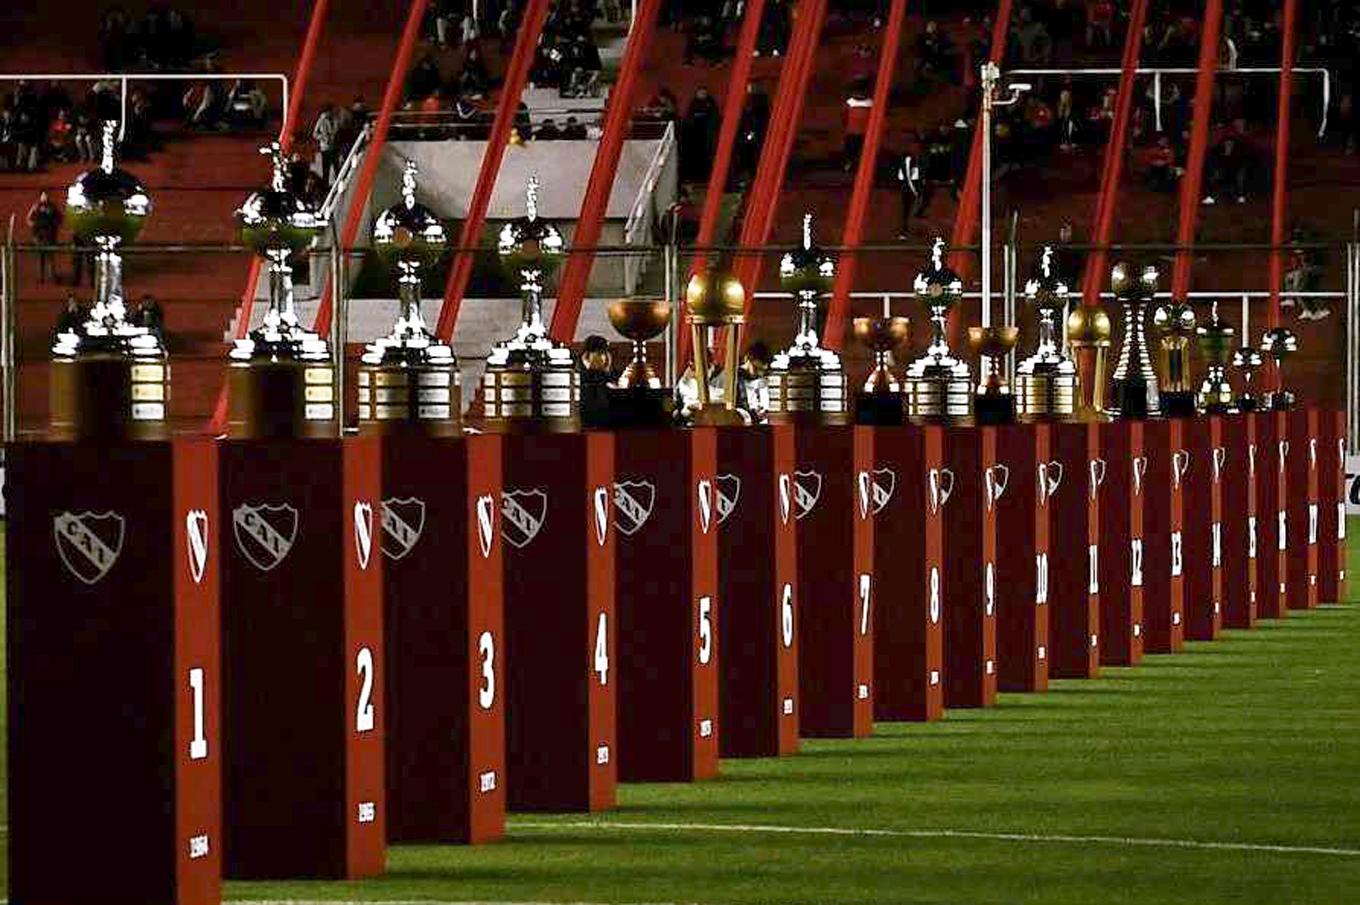 As USA Latino - Conoce a los clubes con más títulos de Copa Libertadores  ⚽🏆 Club Atlético Independiente encabeza la lista 🔝